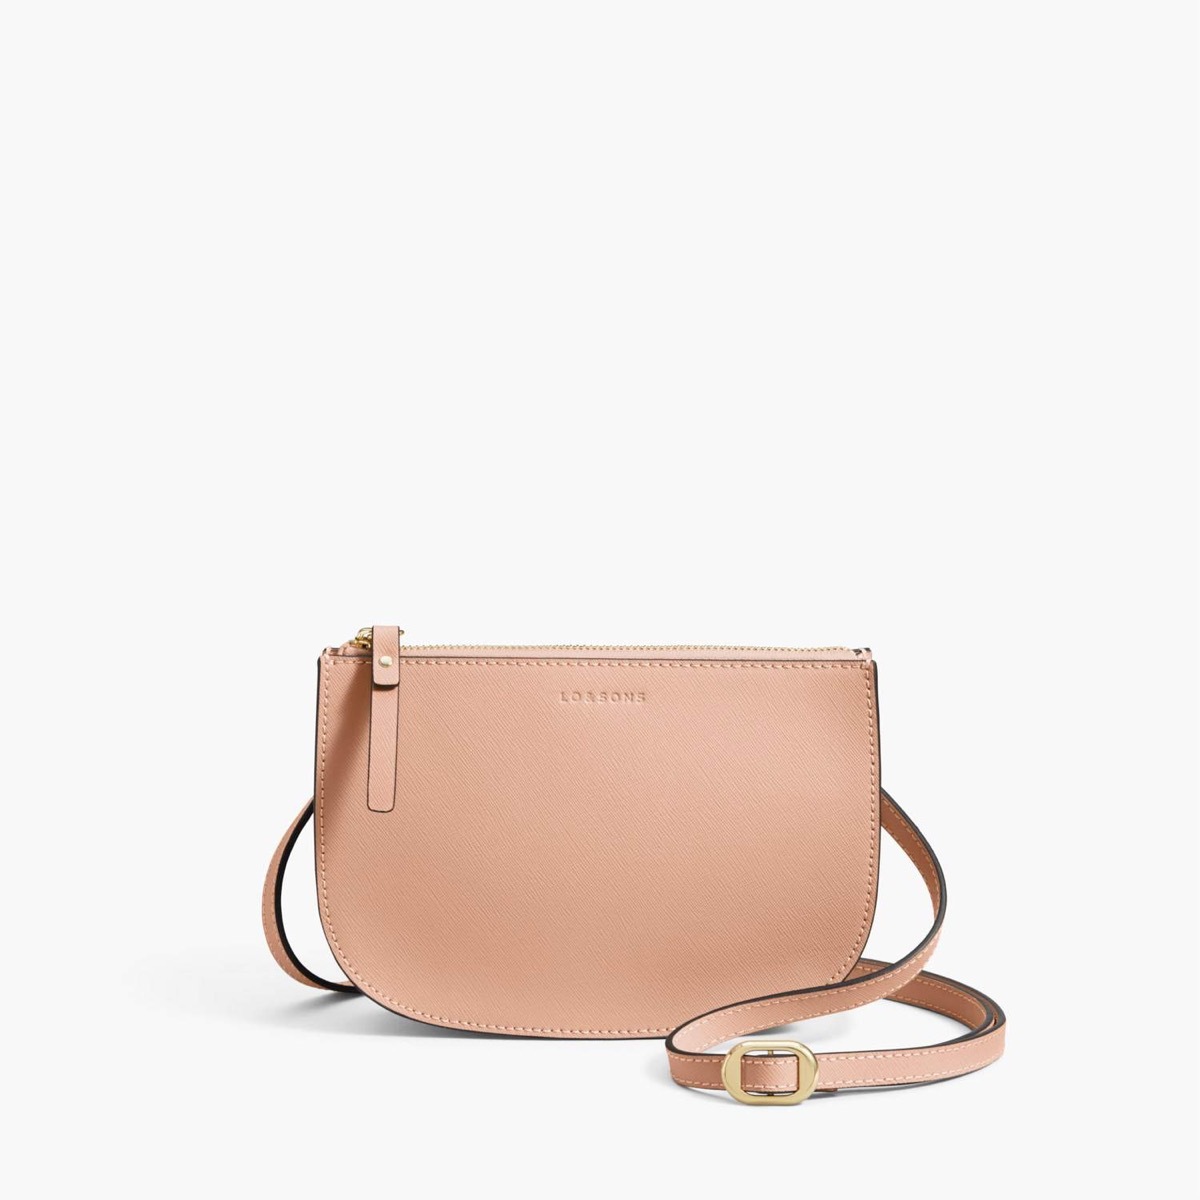 blush waverly 2 purse on white background